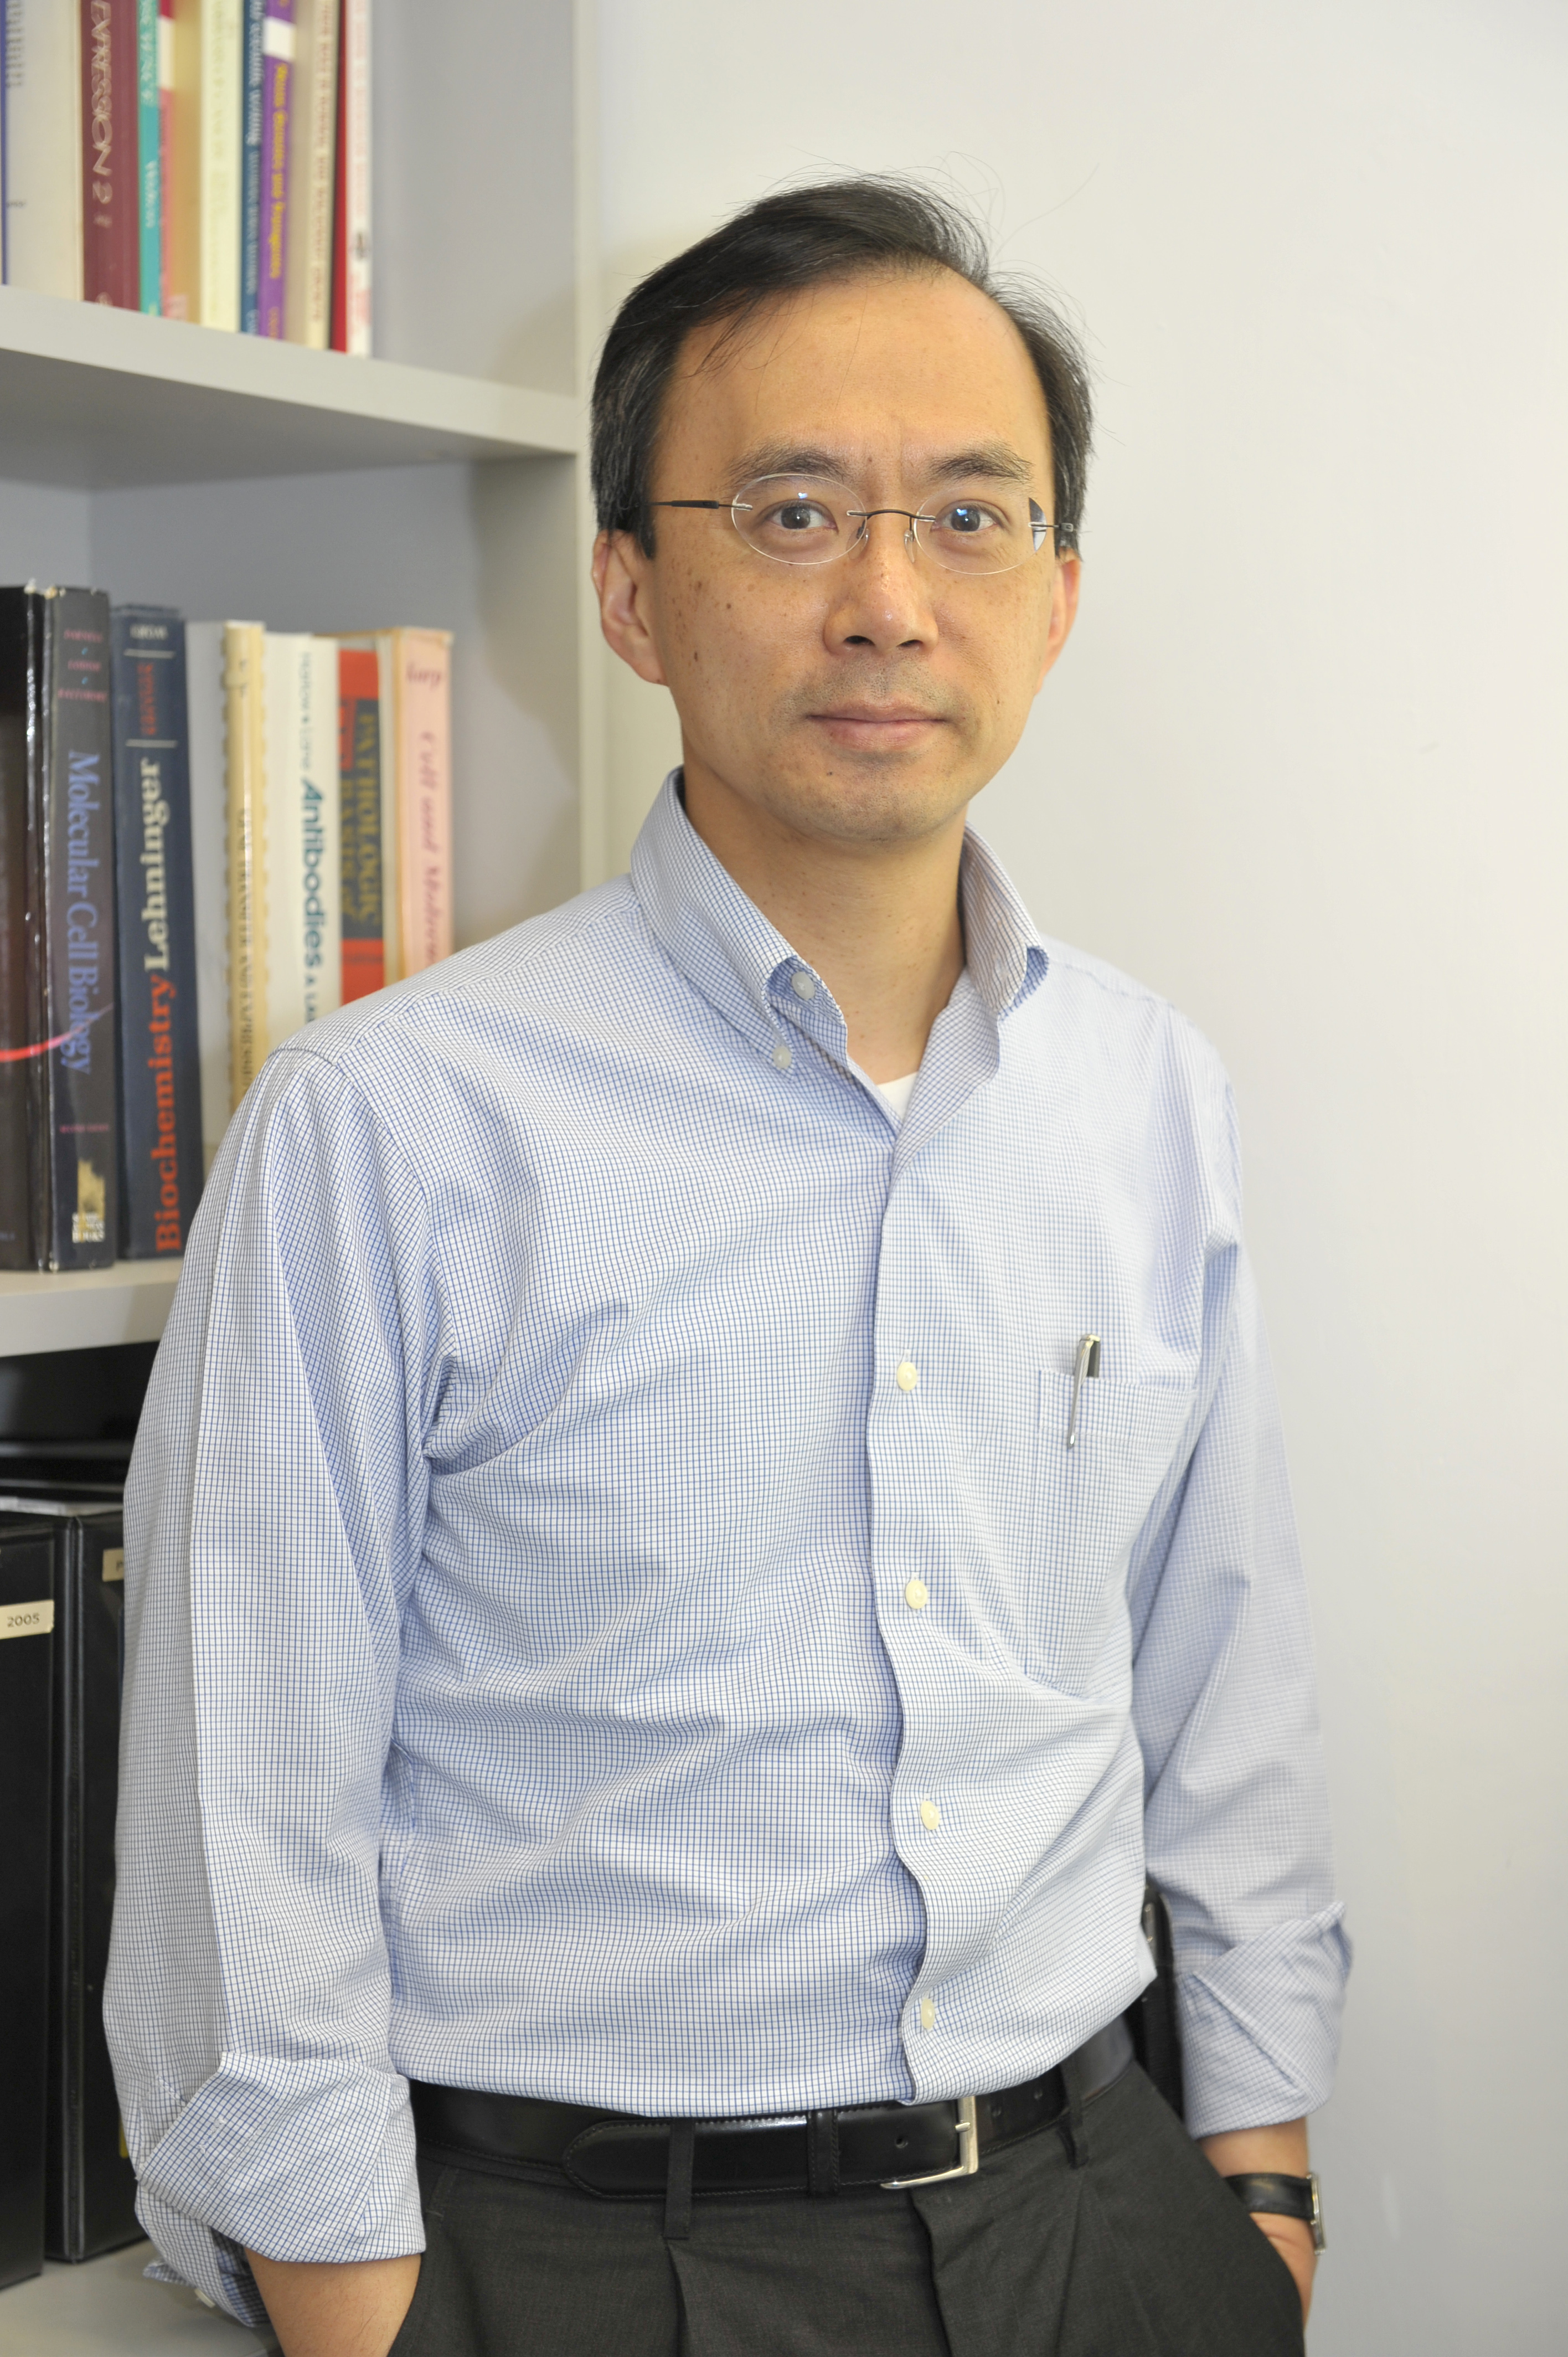 Professor Andrew Man-lok CHAN joins an international research team